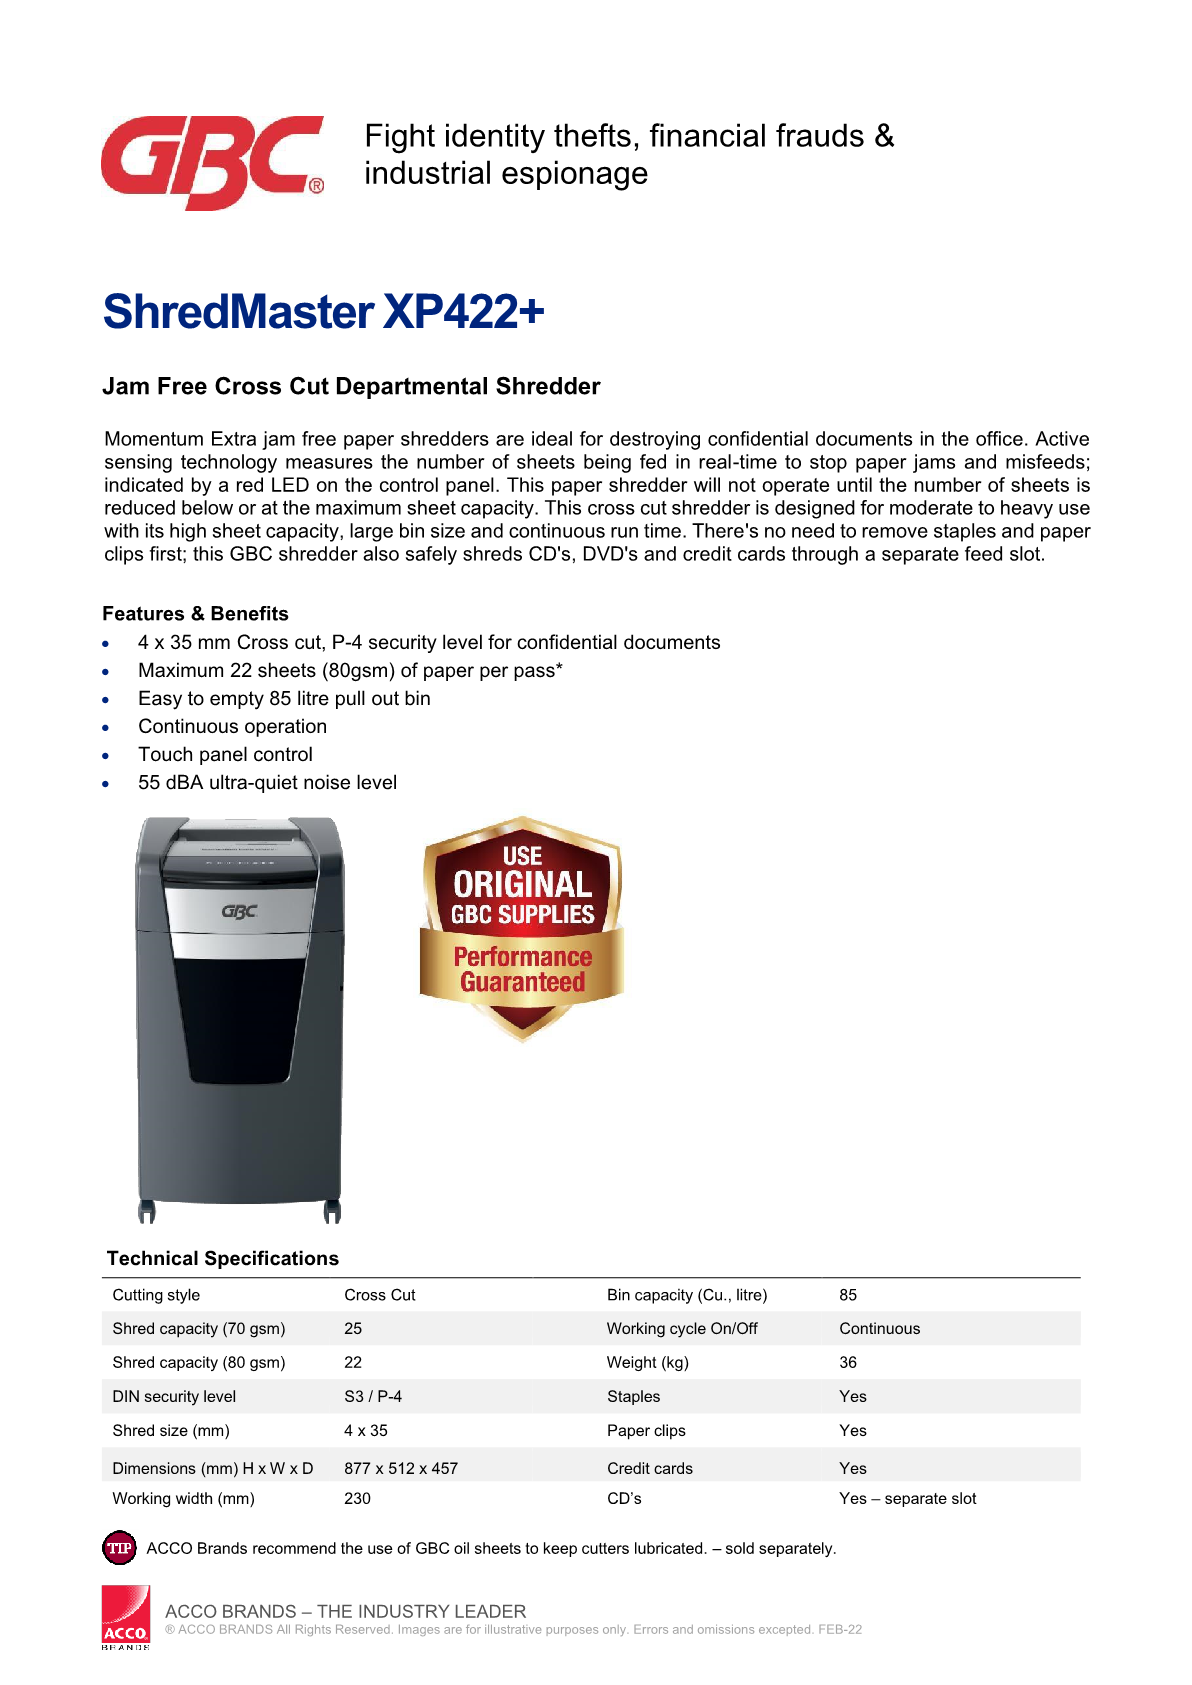 2022-datasheet-shredmaster-xp422-r1.png